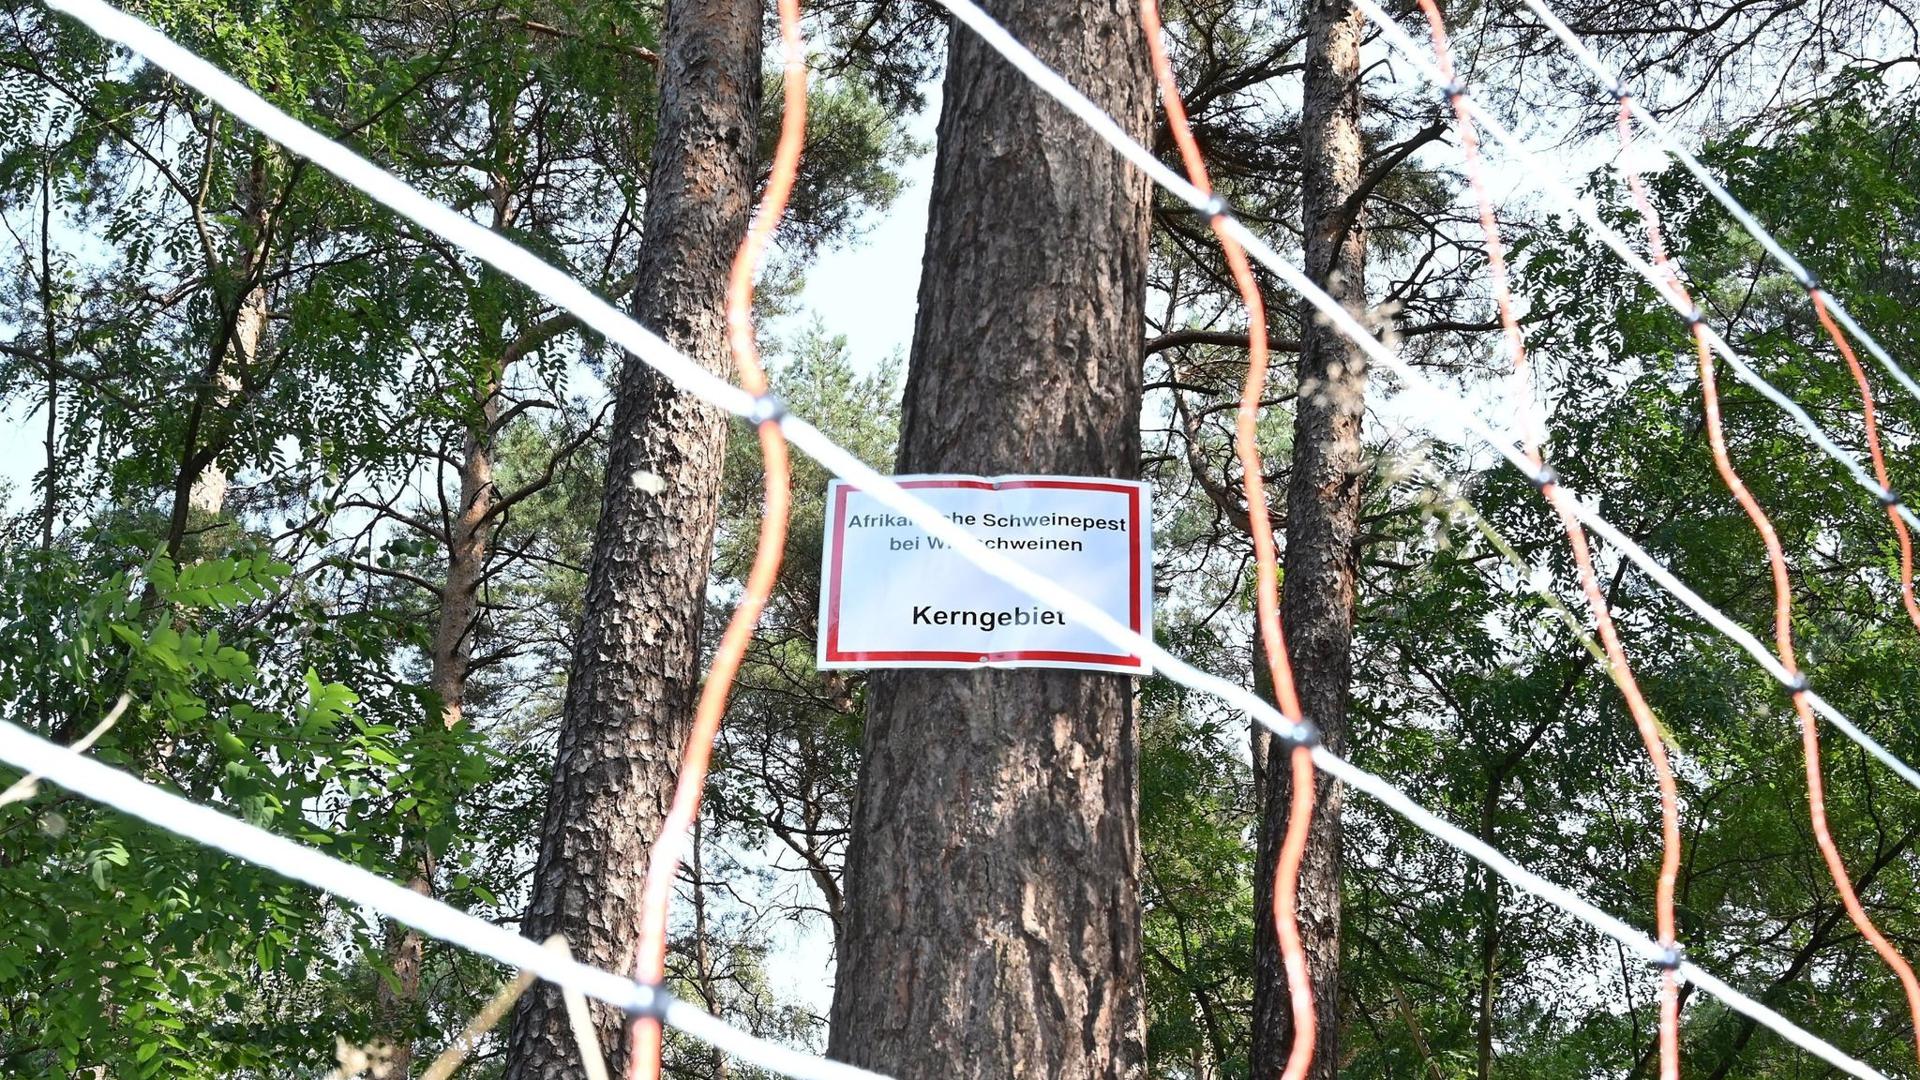 Die Aufschrift: „Afrikanische Schweinepest bei Wildschweinen Kerngebiet“ steht auf einem Schild an einem Baum hinter einem mobilen Elektrozaun.